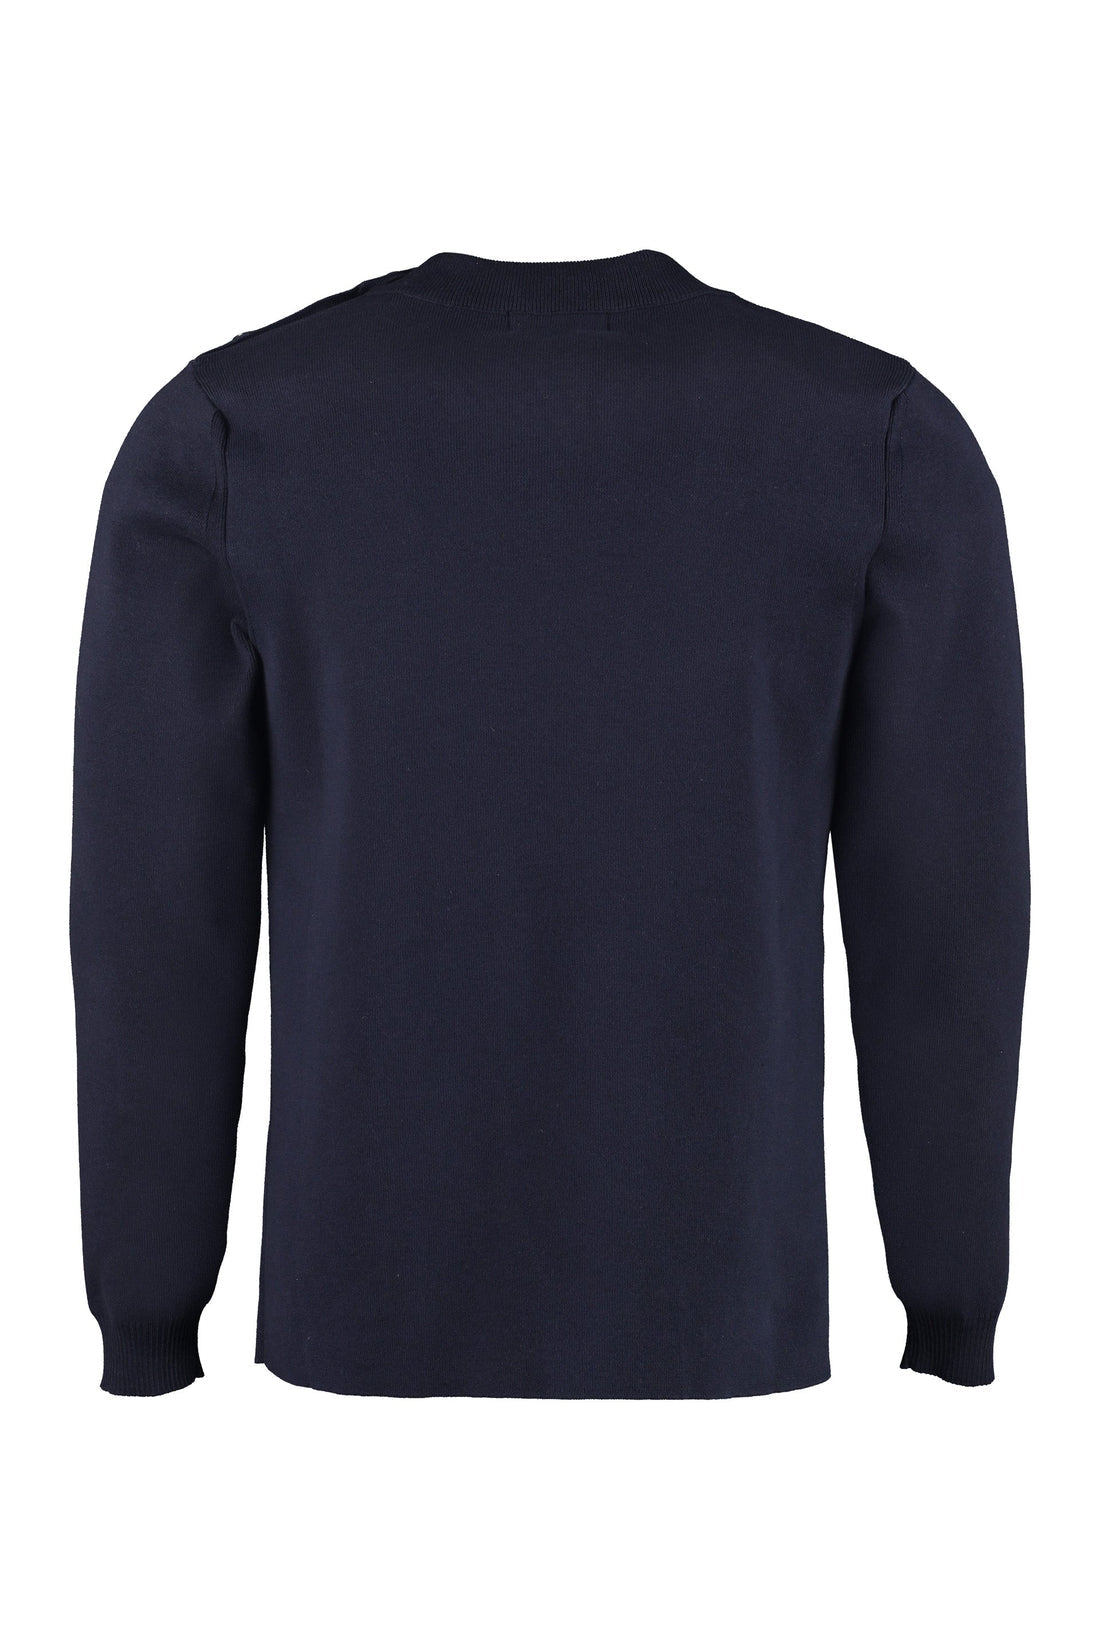 Maison Labiche-OUTLET-SALE-Cotton crew-neck sweater-ARCHIVIST